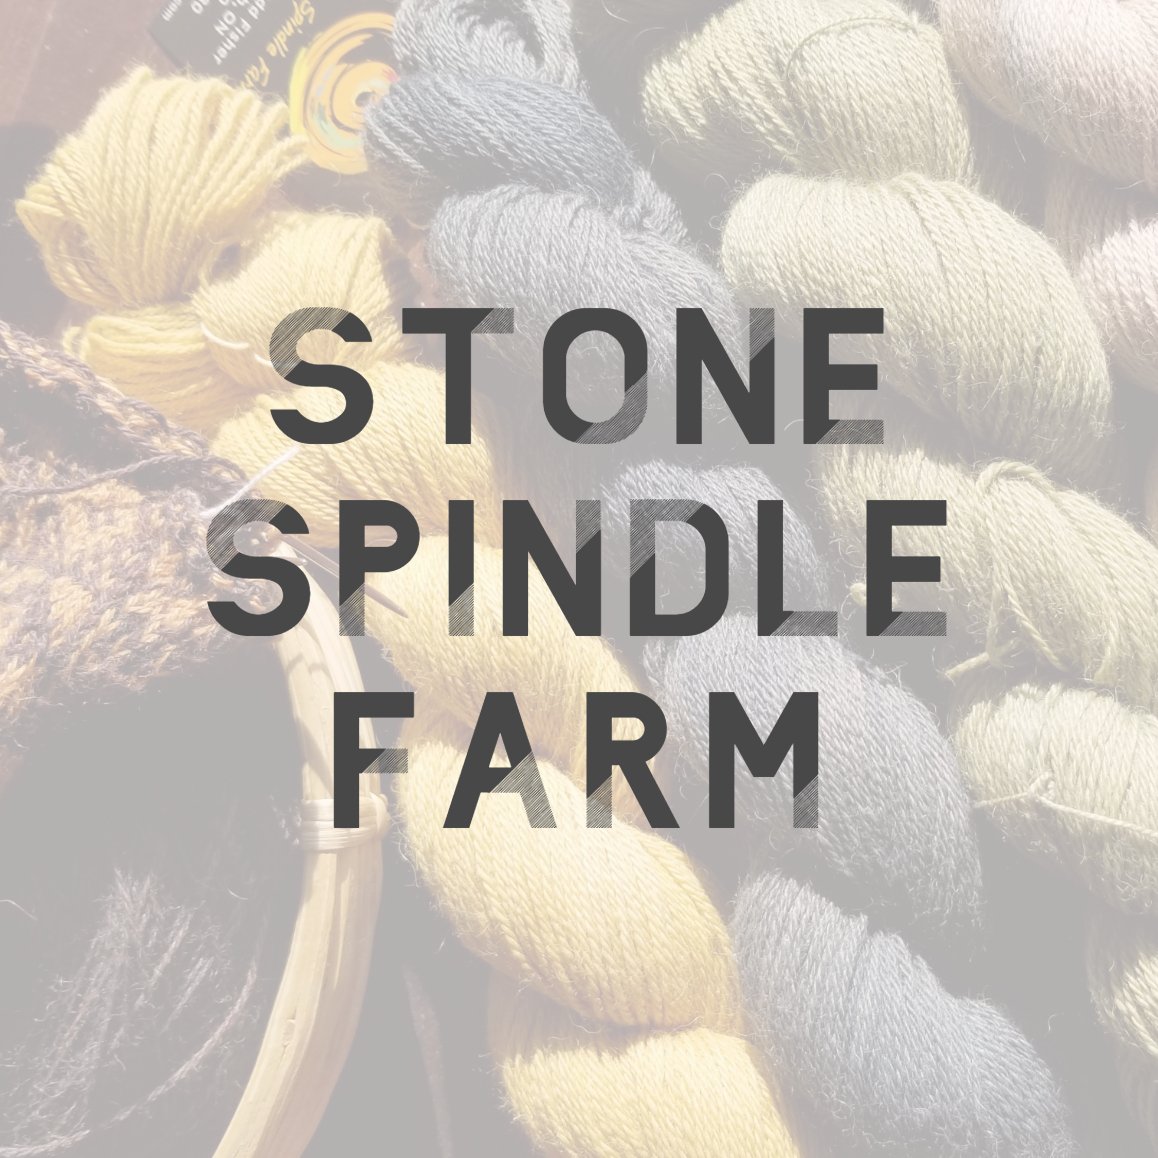 Stone Spindle Farm.jpg